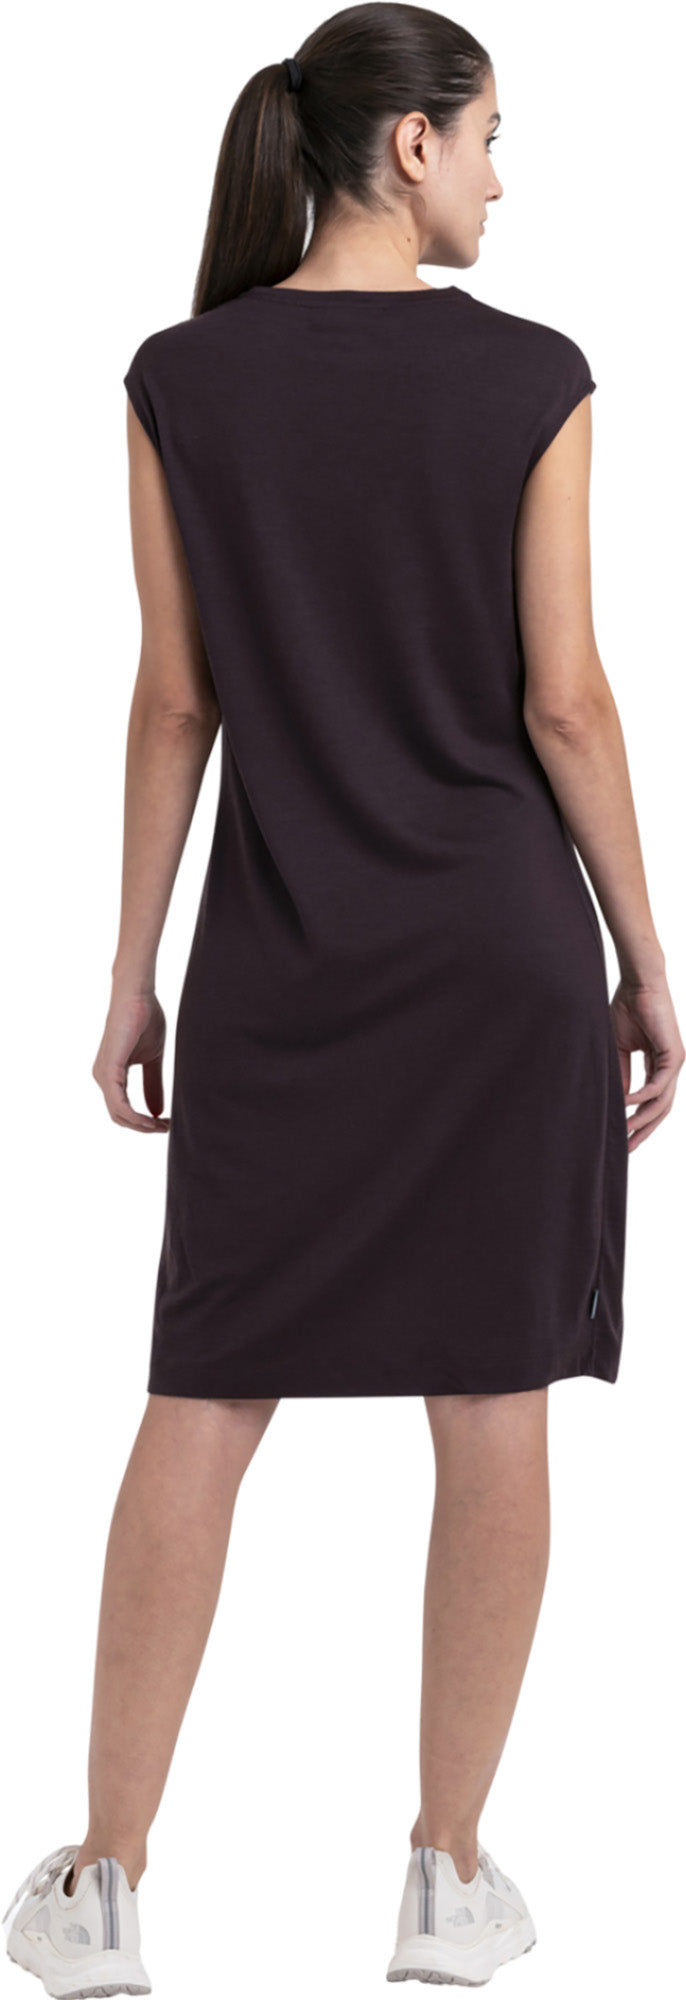 Women's Merino Granary Sleeveless Dress